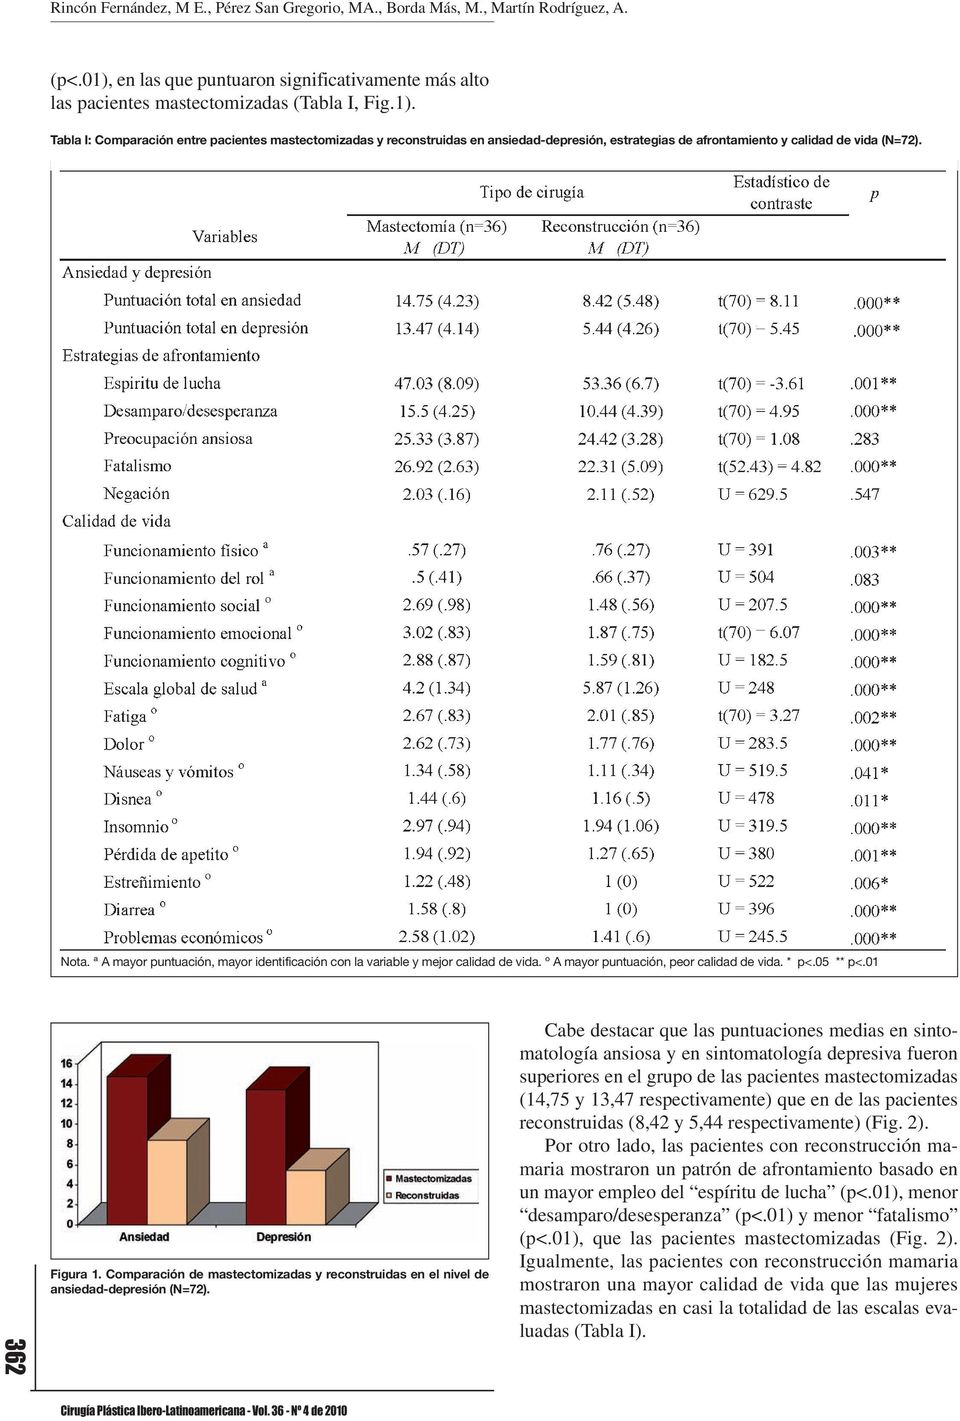 Tabla I: Comparación entre pacientes mastectomizadas y reconstruidas en ansiedad-depresión, estrategias de afrontamiento y calidad de vida (N=72). Nota.